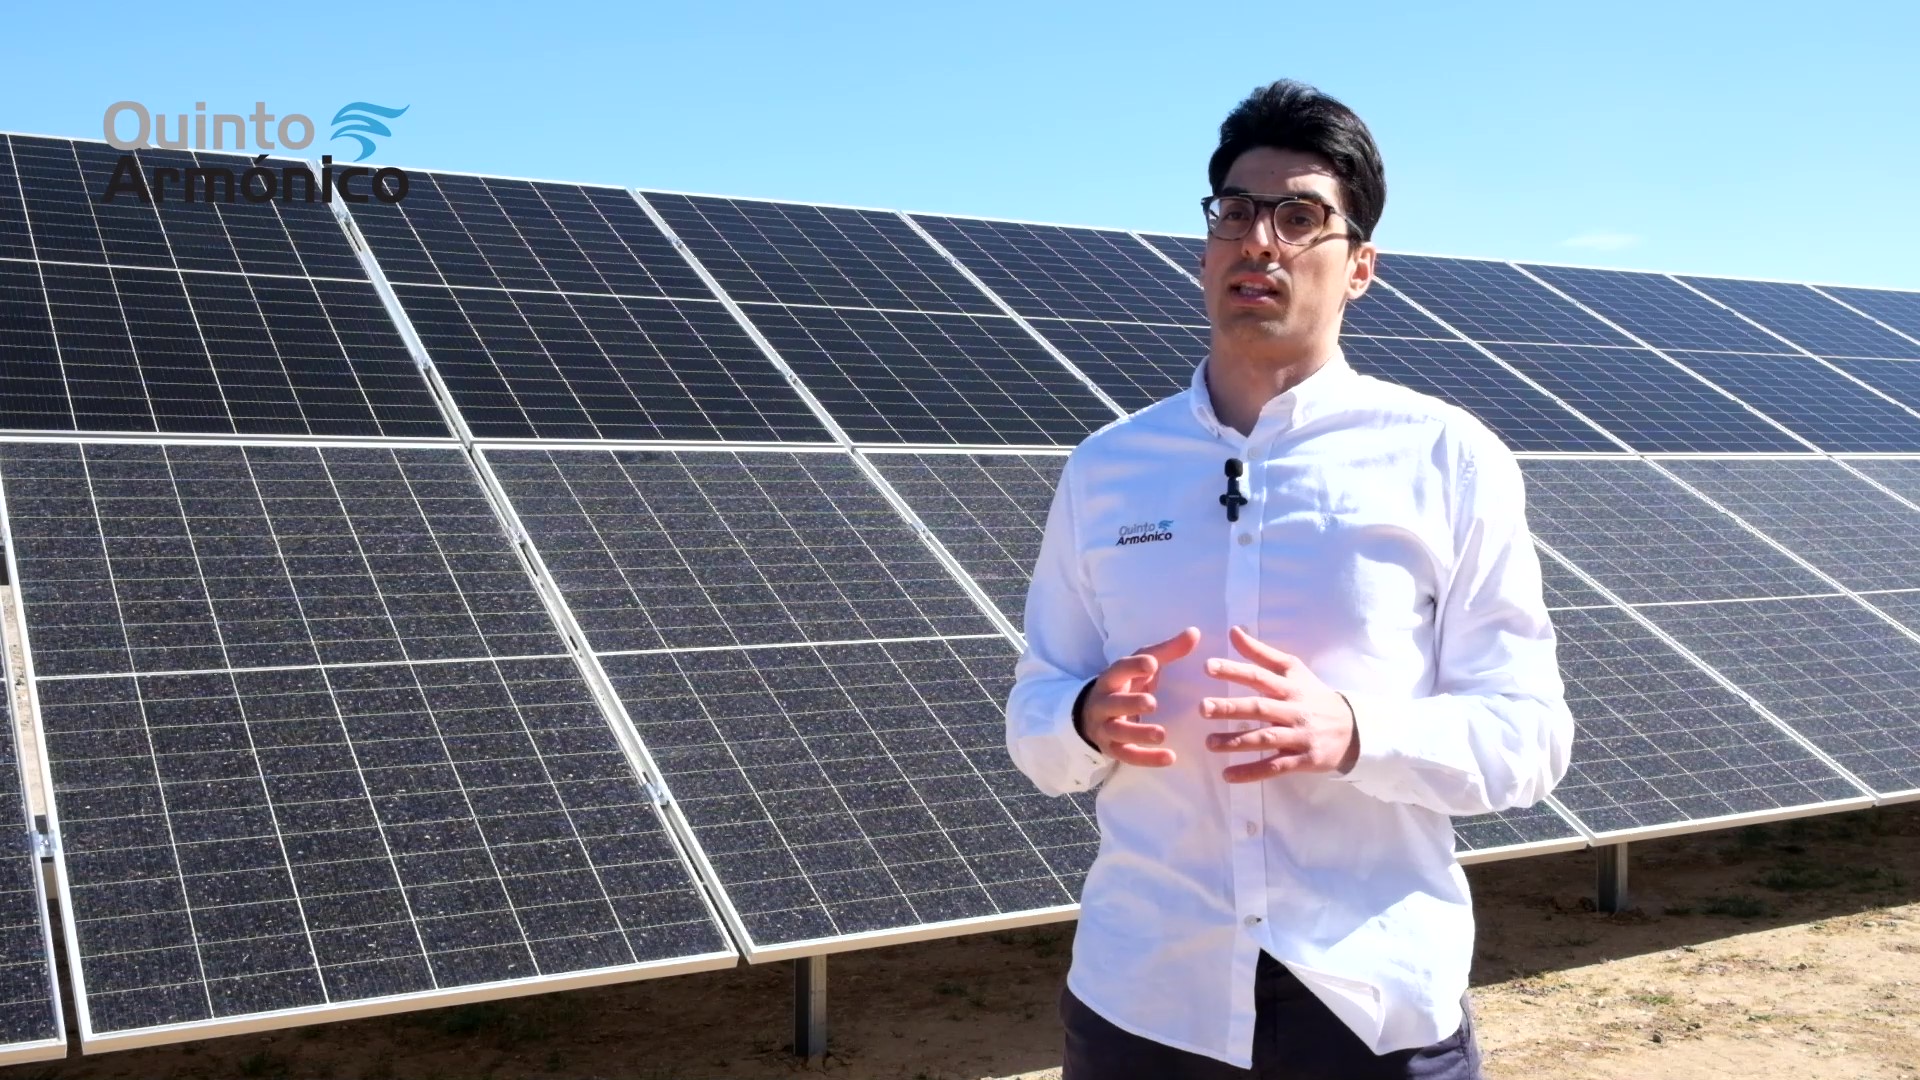 Canibalización fotovoltaica: ¿El futuro es pagar por generar energía? Vamos a evitarlo